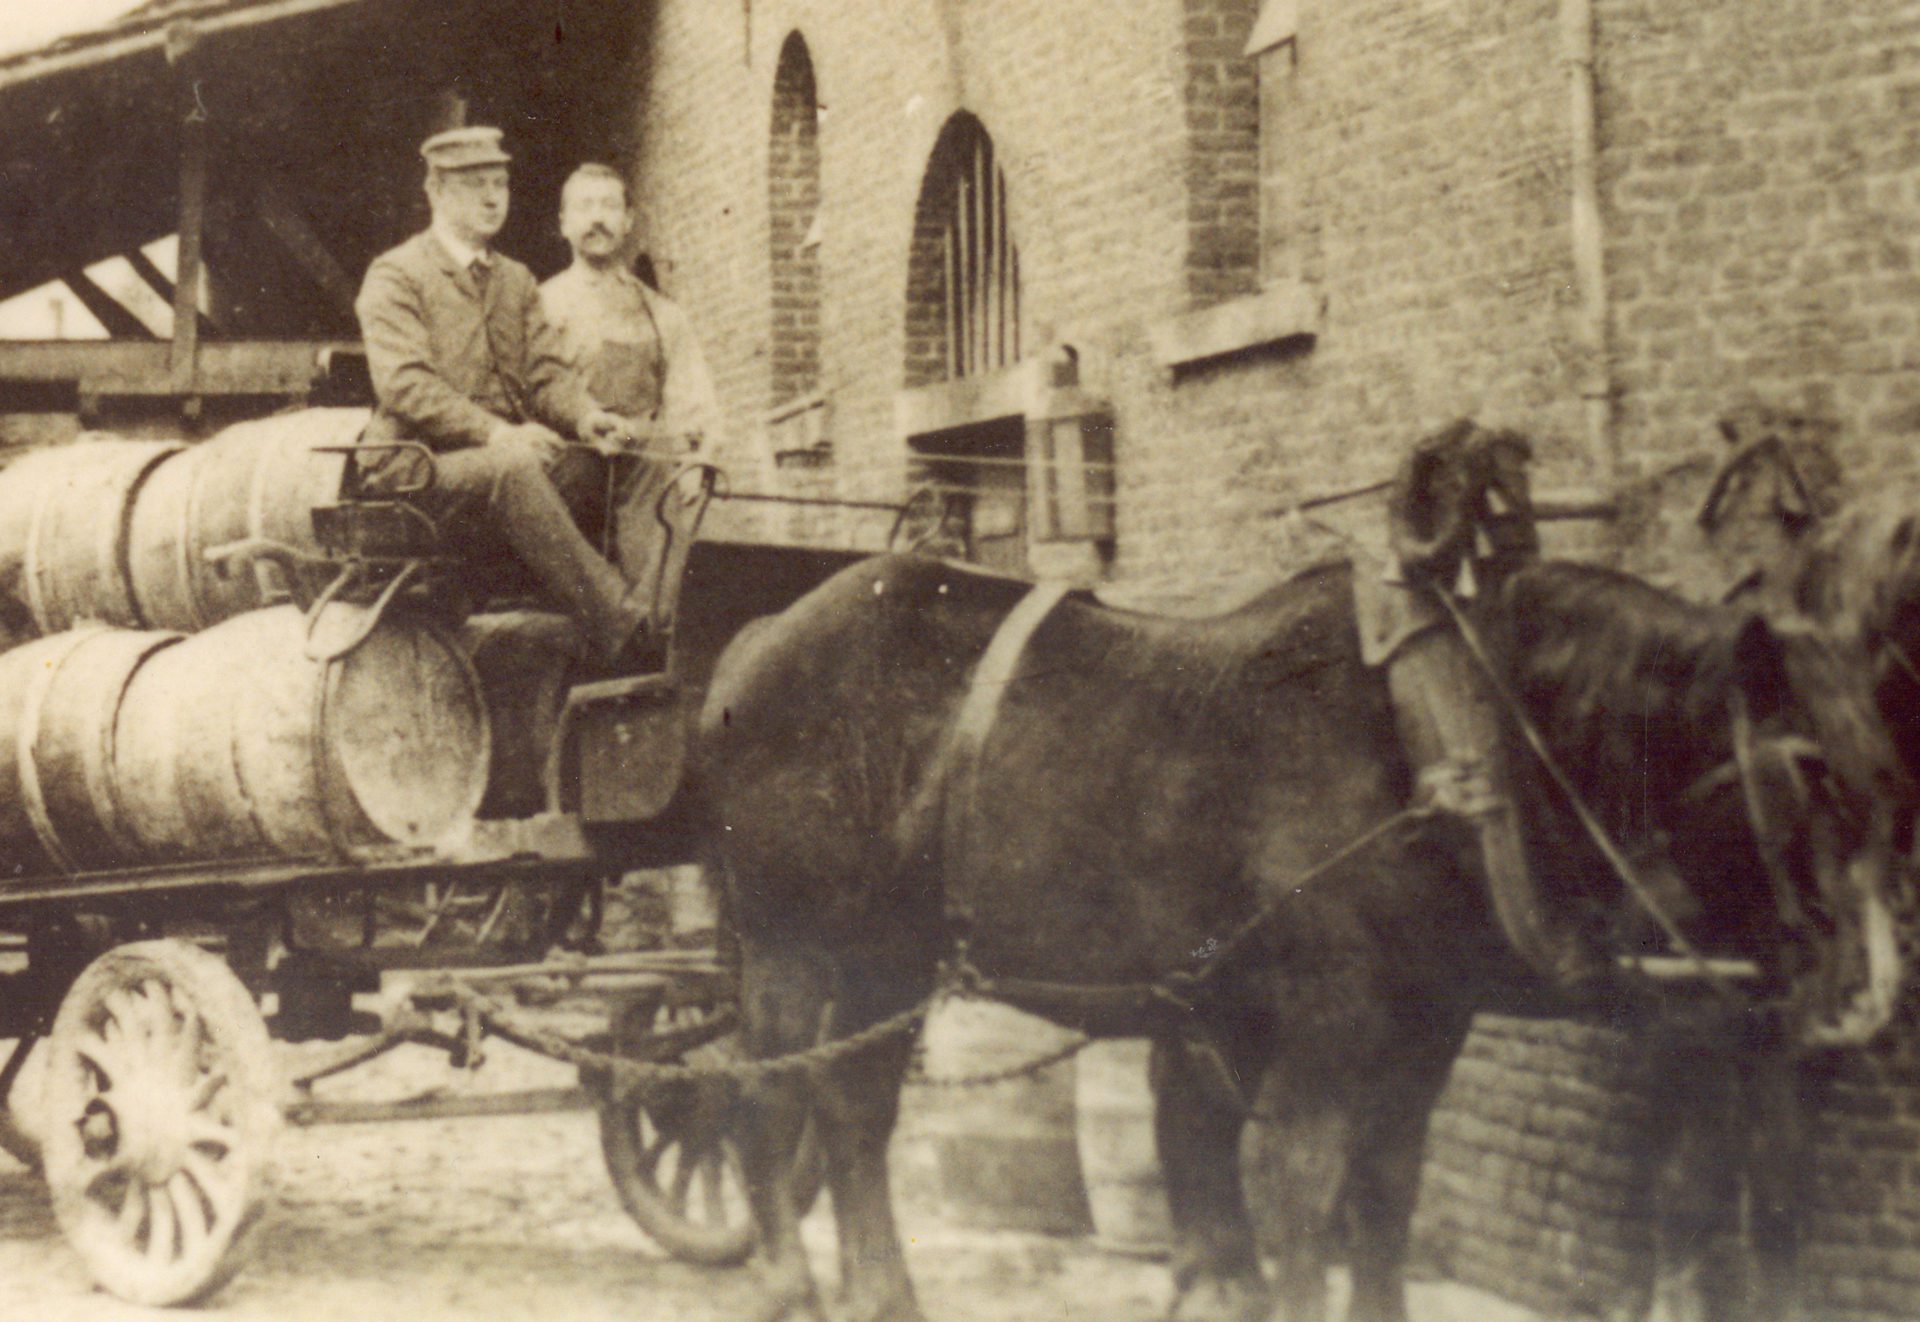 Jules et Auguste posent assis sur une charrette transportant des fûts de bières en bois et tirée par 2 chevaux.